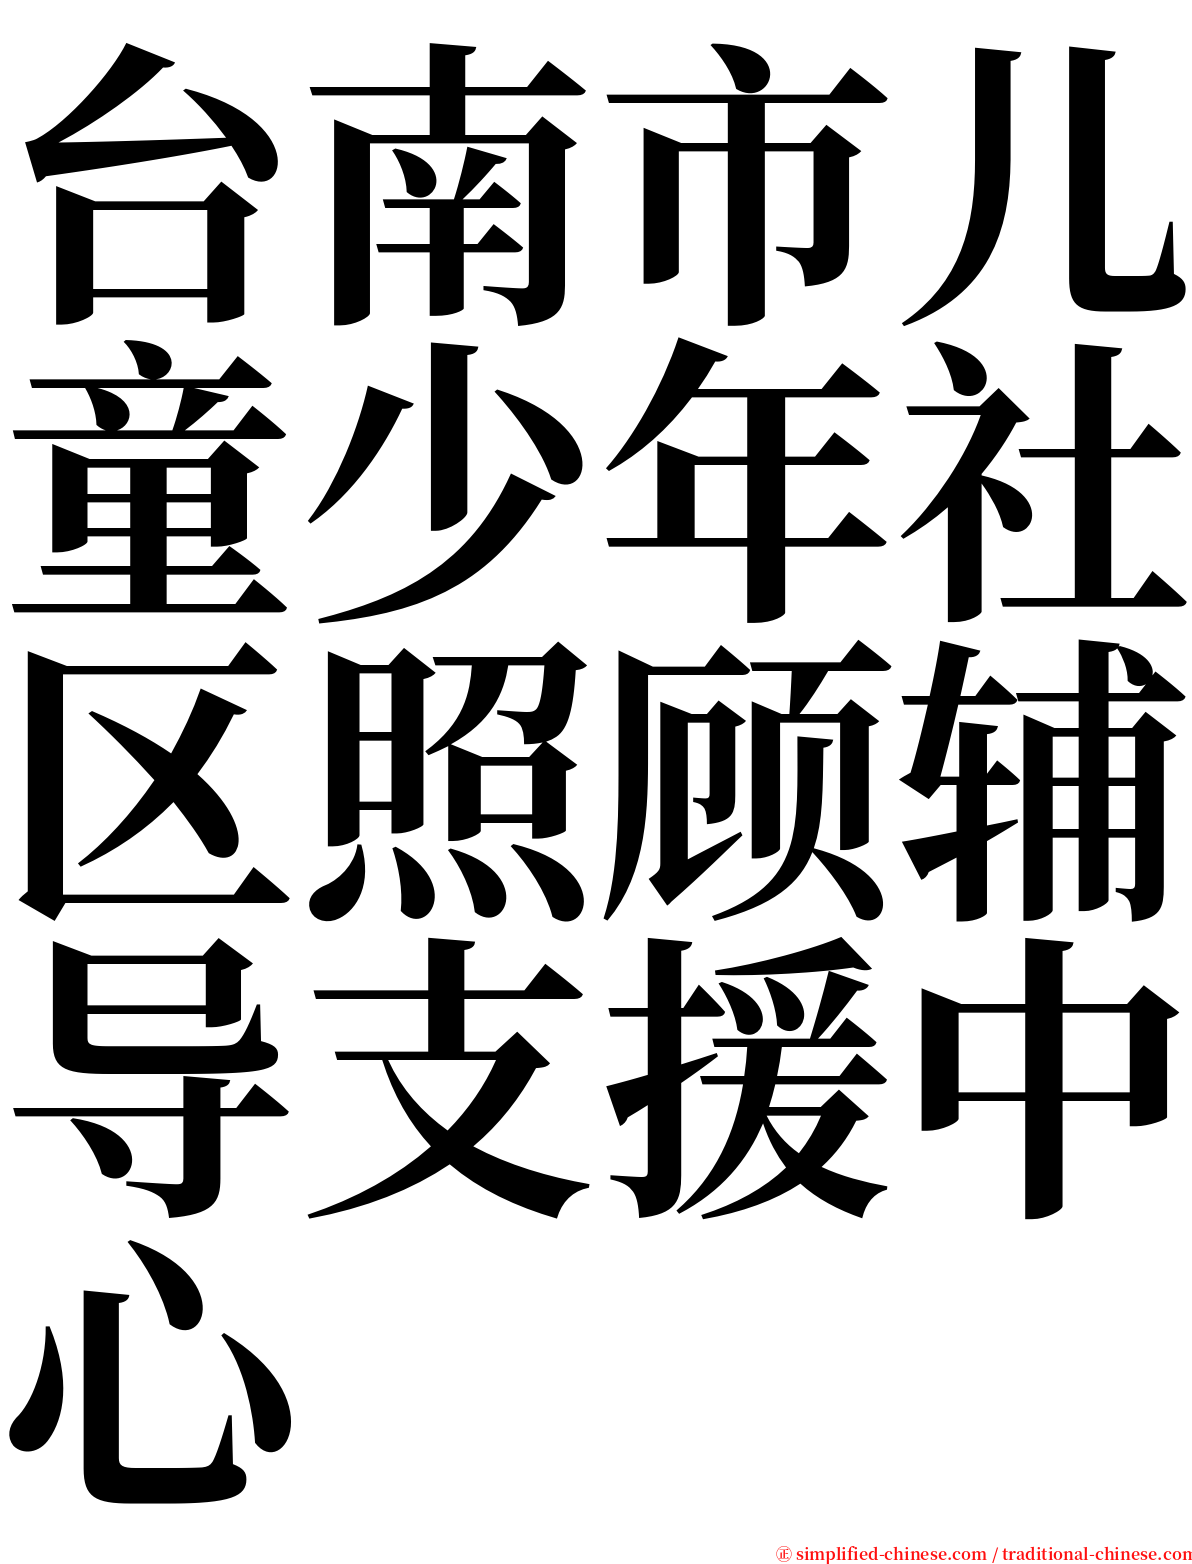 台南市儿童少年社区照顾辅导支援中心 serif font